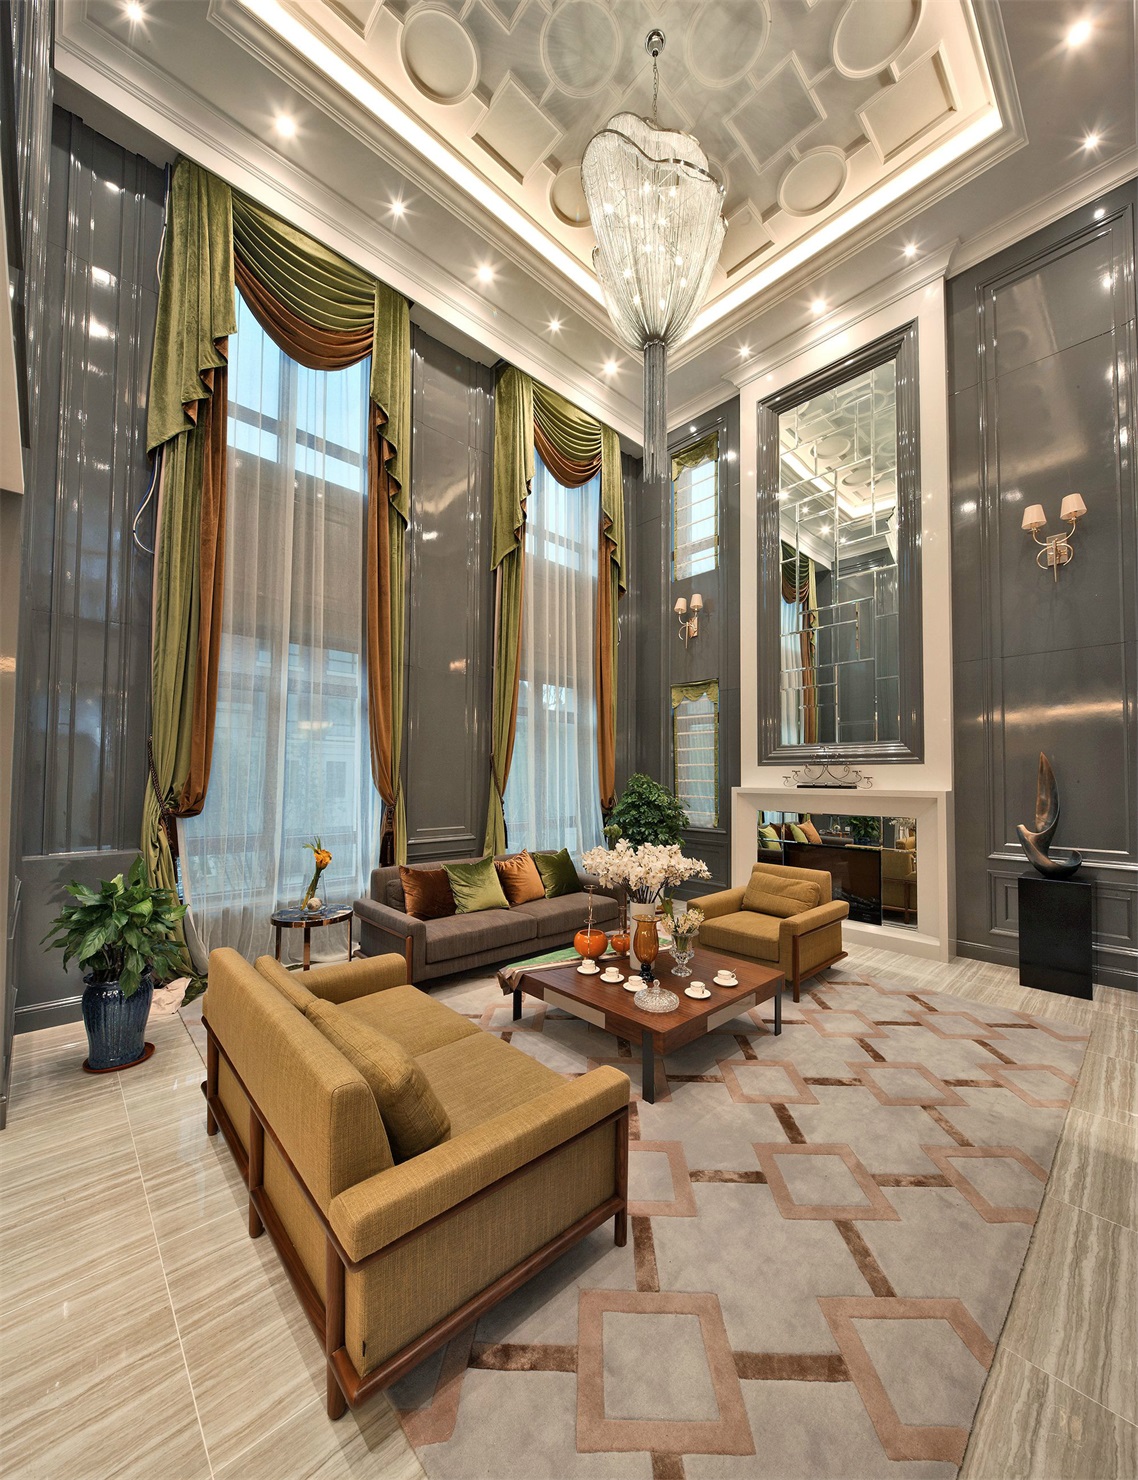 整个客厅的布置以休闲与聊天功能为主，天花造型贵气典雅，让空间显得更加美观大气。